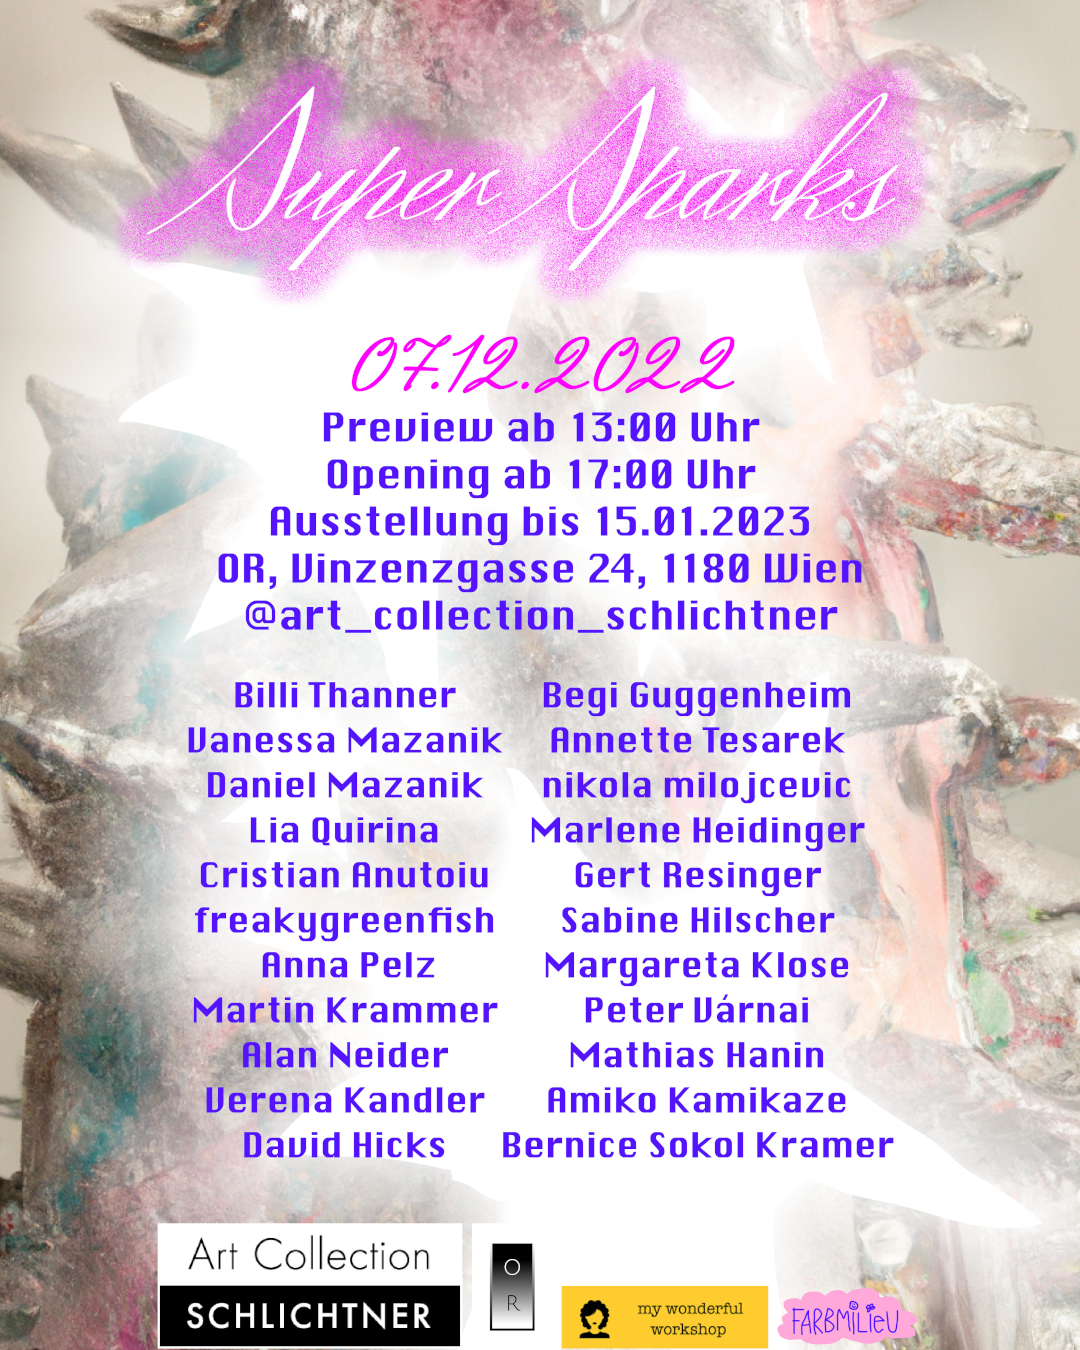 SUPER SPARKS – 07.12.2022 – 15.01.2023. Preview  1 pm, Opening  5pm. Location: OR, Vinzenzgasse 24, 1180 Vienna. @art_collection_schlichtner